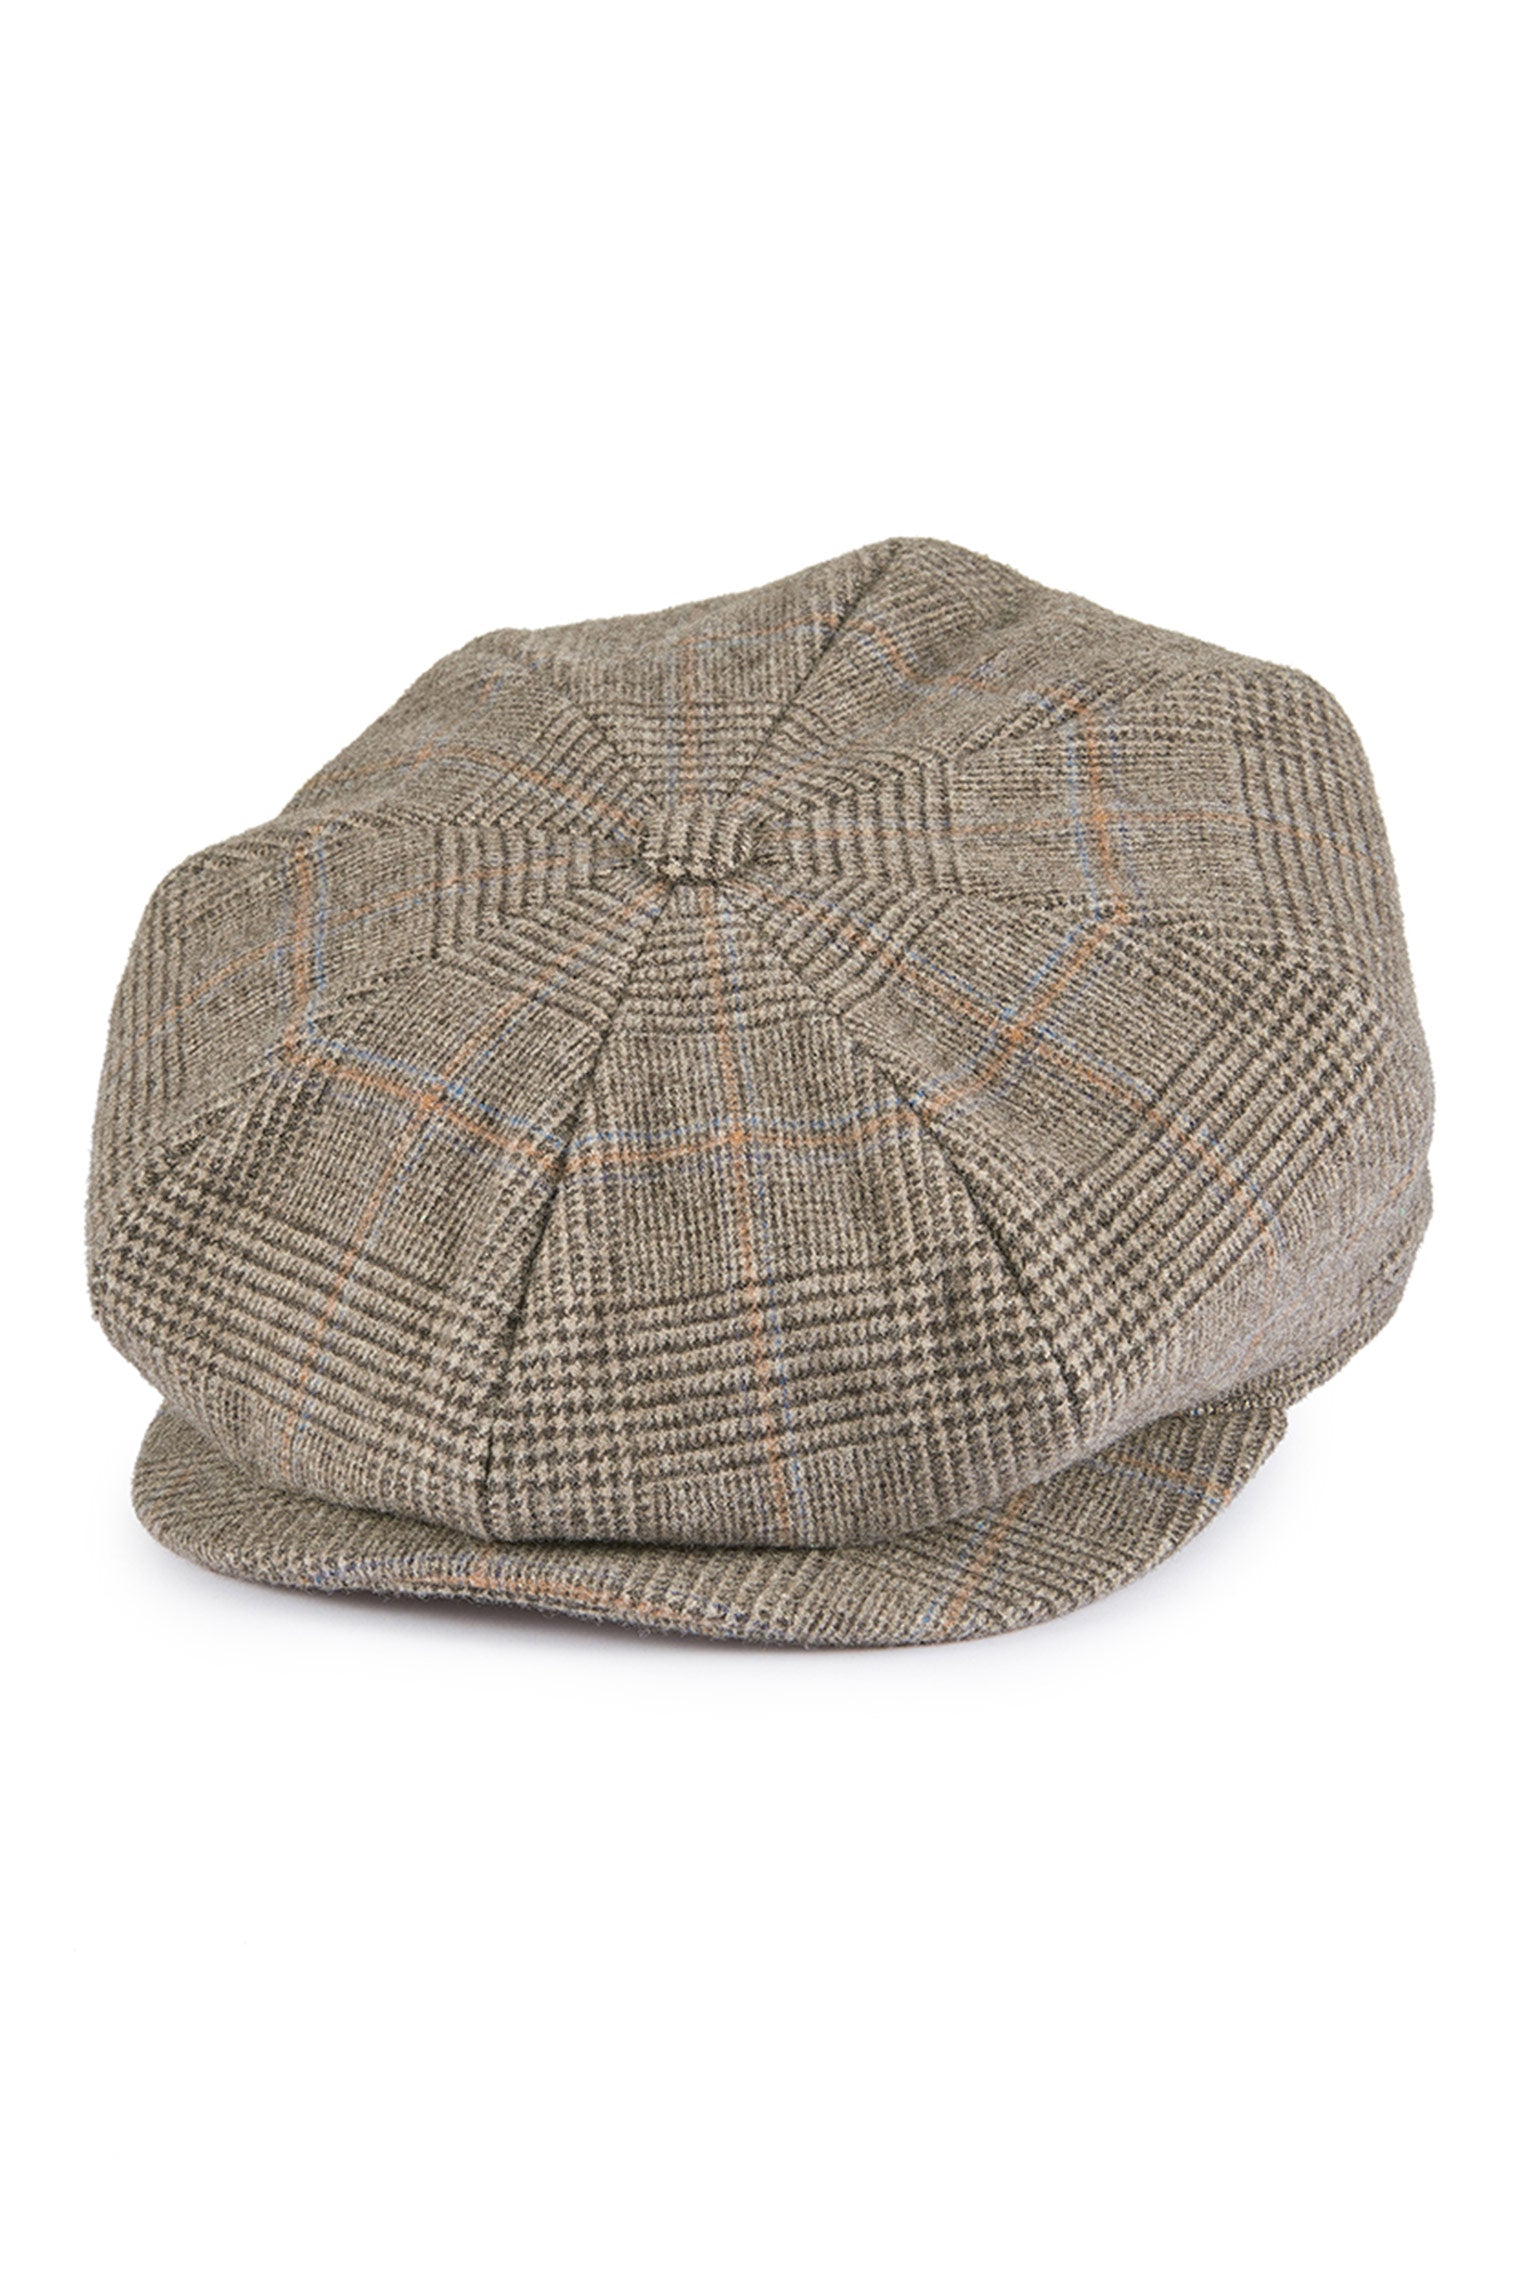 Escorial Wool Tremelo Bakerboy Cap - Escorial Wool Headwear - Lock & Co. Hatters London UK